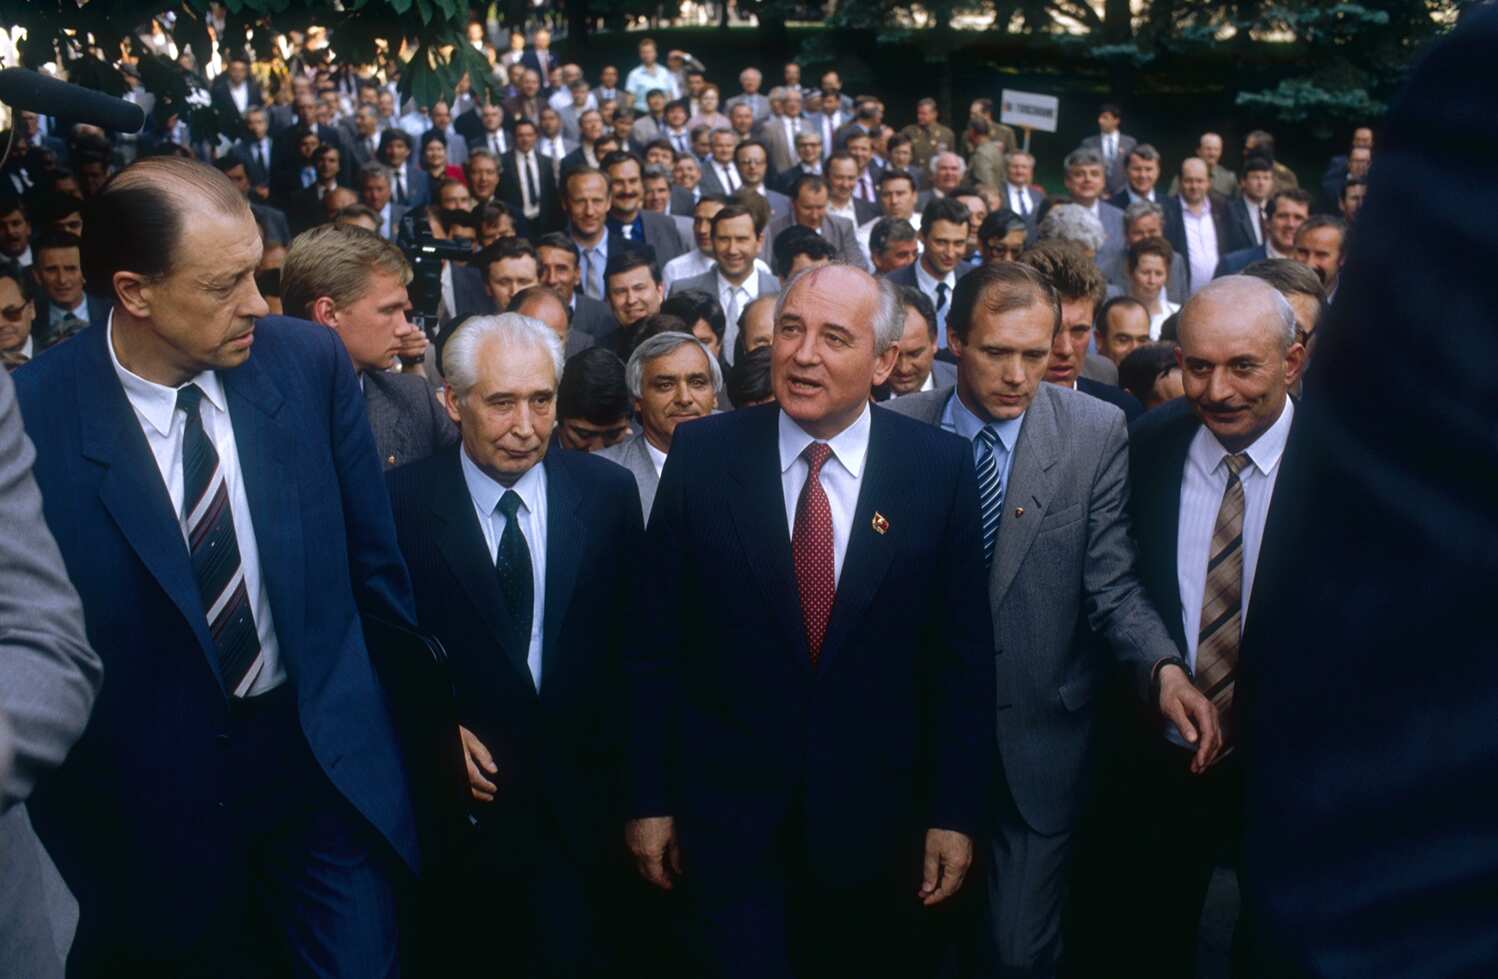 Gorbachev đi cùng một đám đông đại biểu tới đại hội lần thứ 28 và cũng là đại hội cuối cùng của đảng Cộng Sản Liên Xô vào tháng Bảy, 1990. Ảnh: Pascal Le Segretain/ Sygma via Getty Images